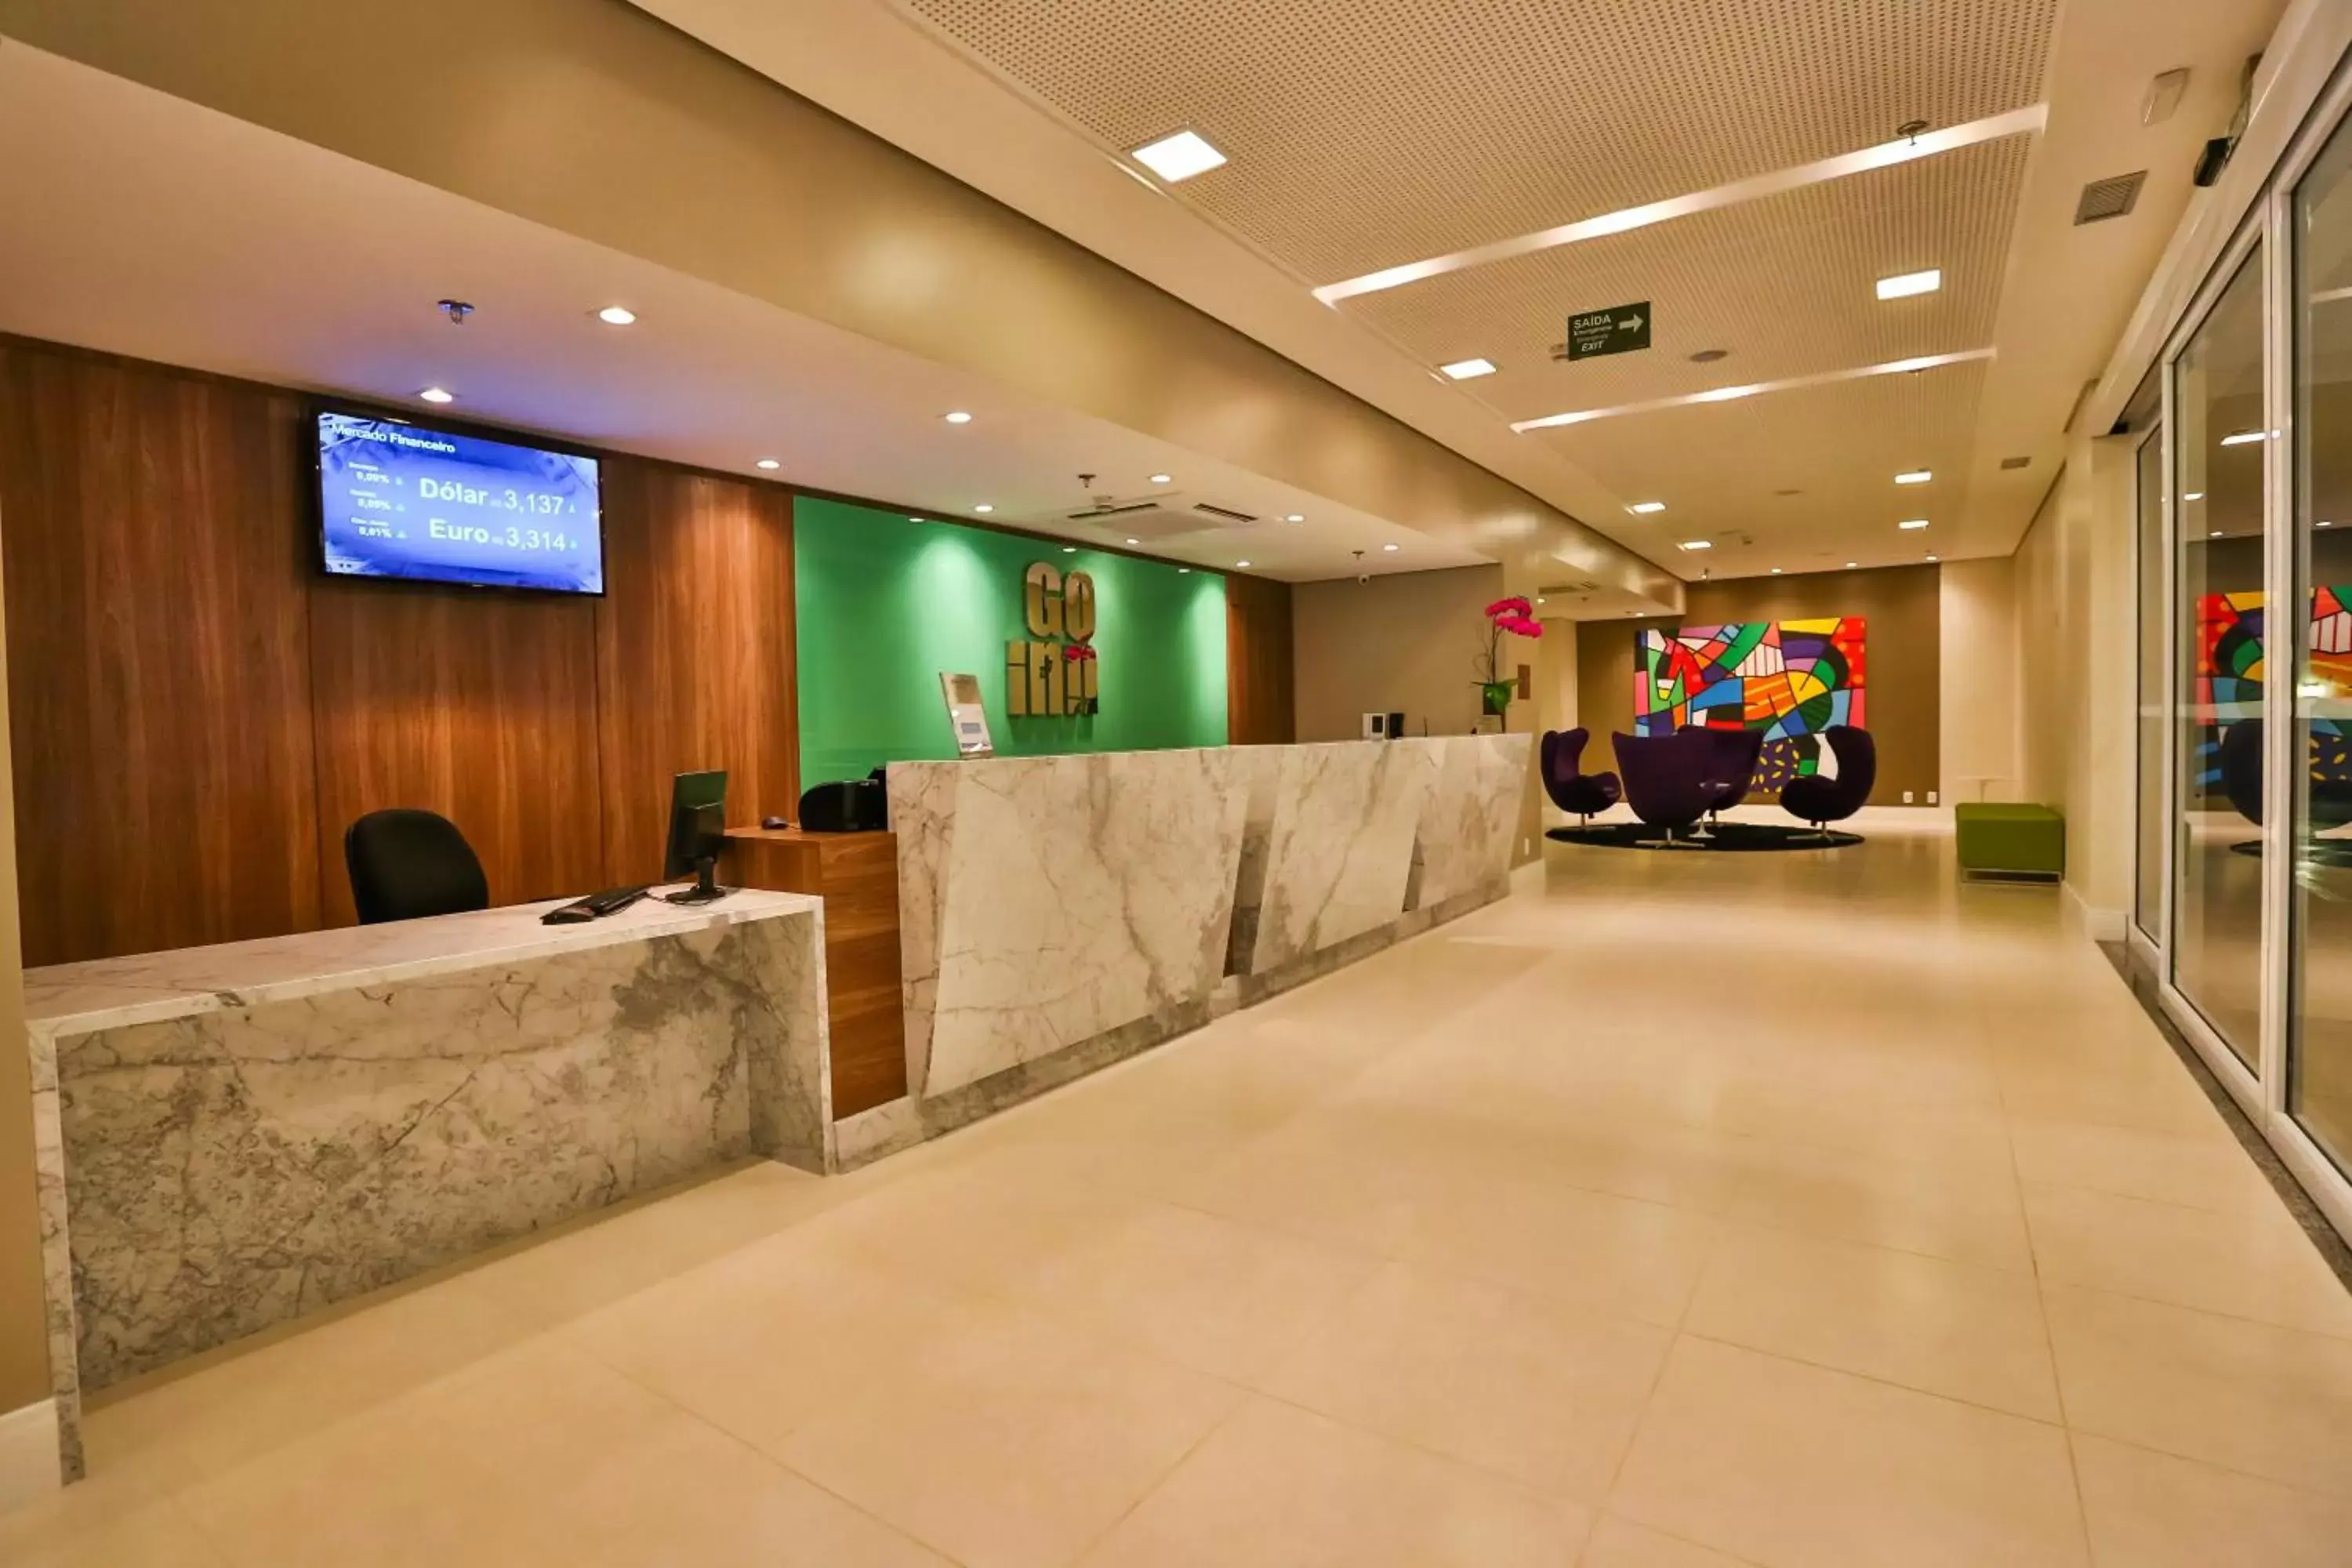 Lobby or reception, Lobby/Reception in Go Inn Cambuí Campinas